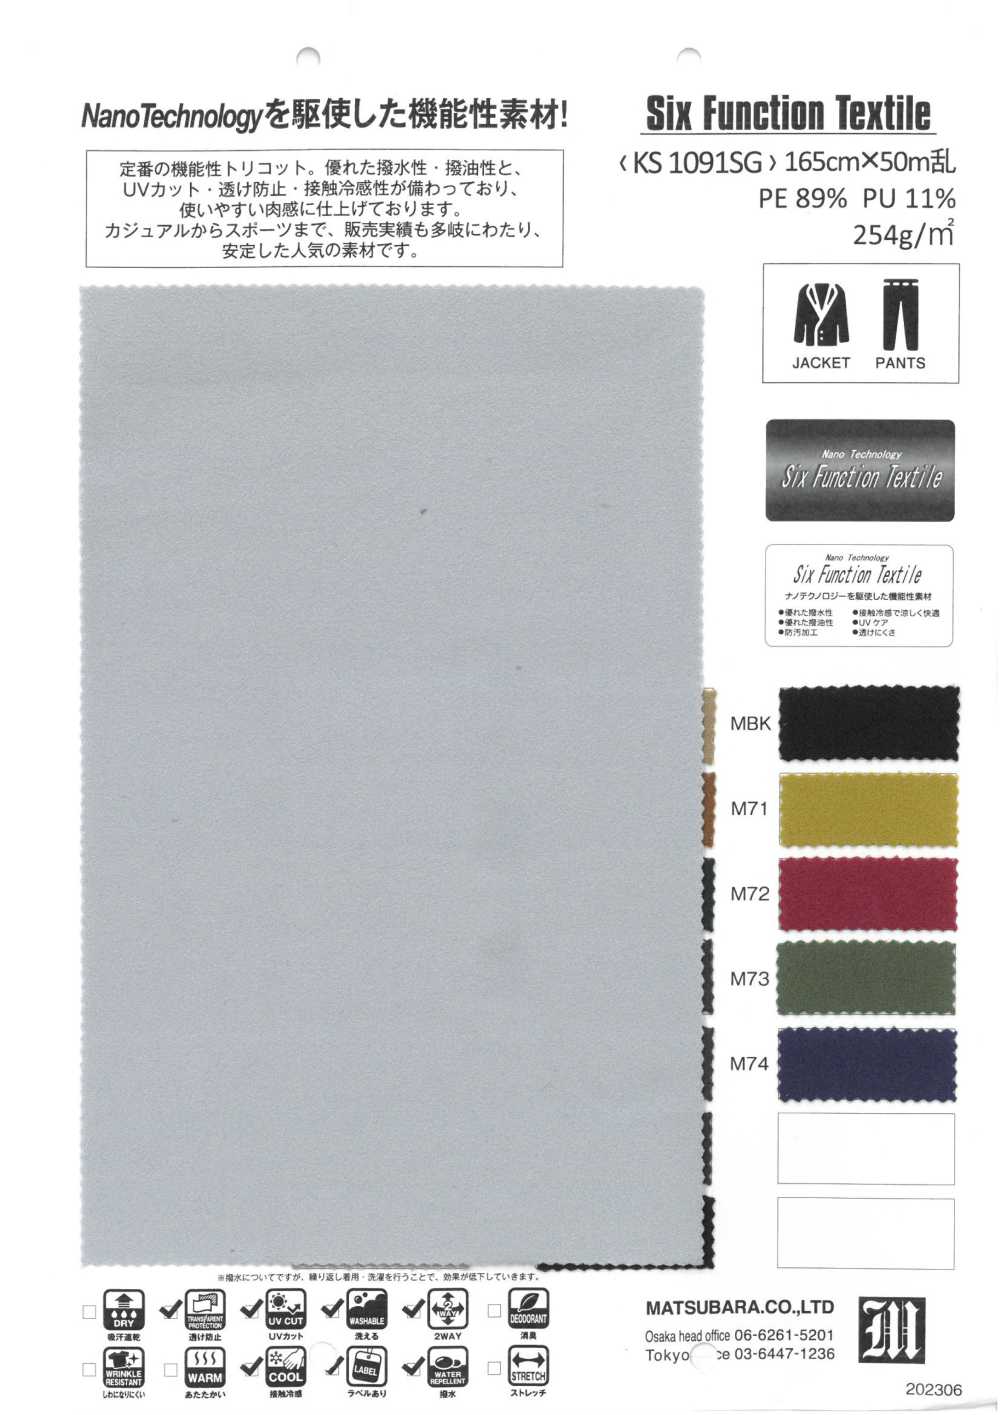 KS1091SG Textil De Seis Funciones[Fabrica Textil] Matsubara